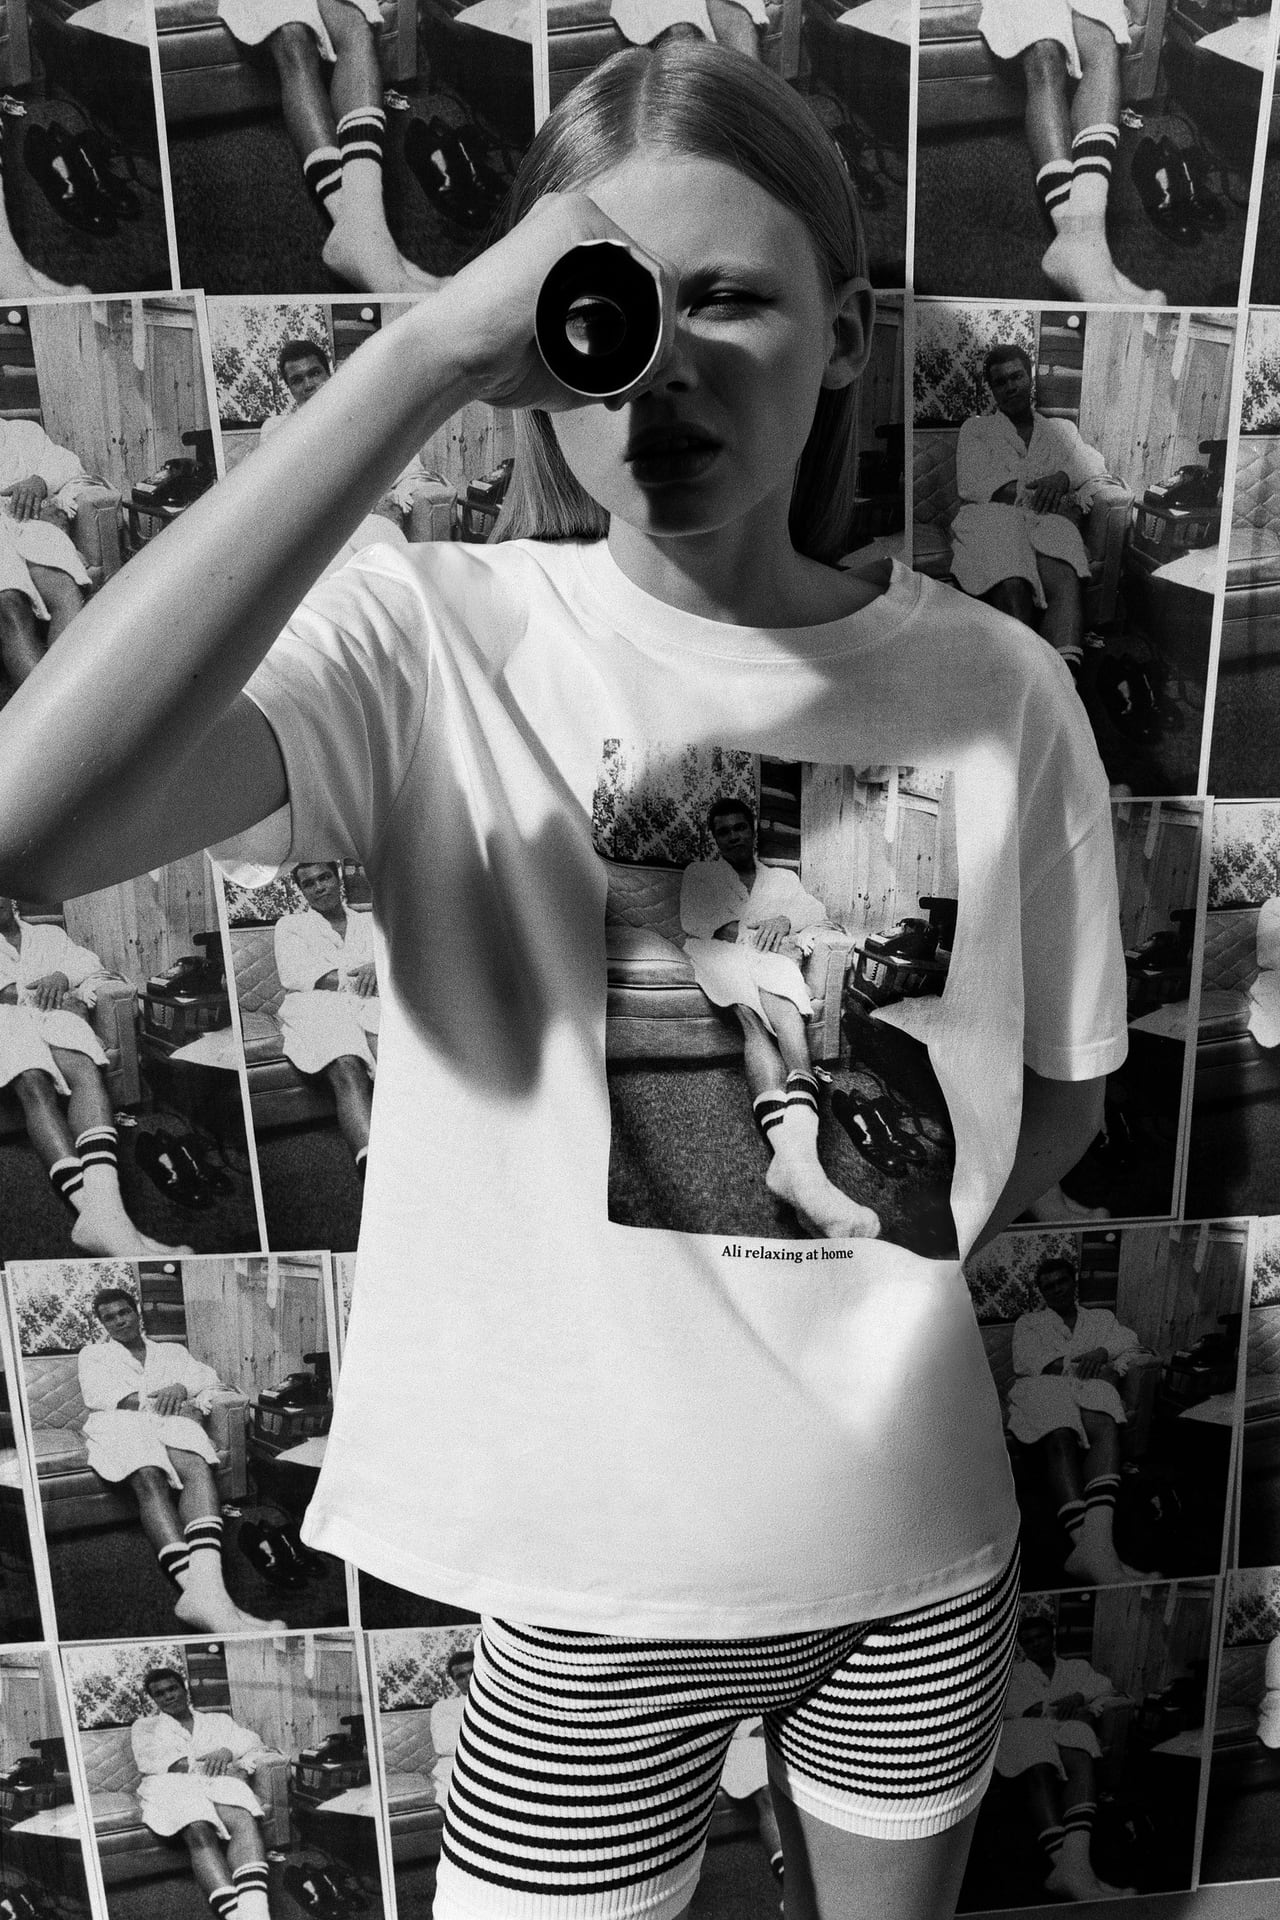 Zara lanza unas t-shirt perfectas para fanáticos de la cultura del entretenimiento